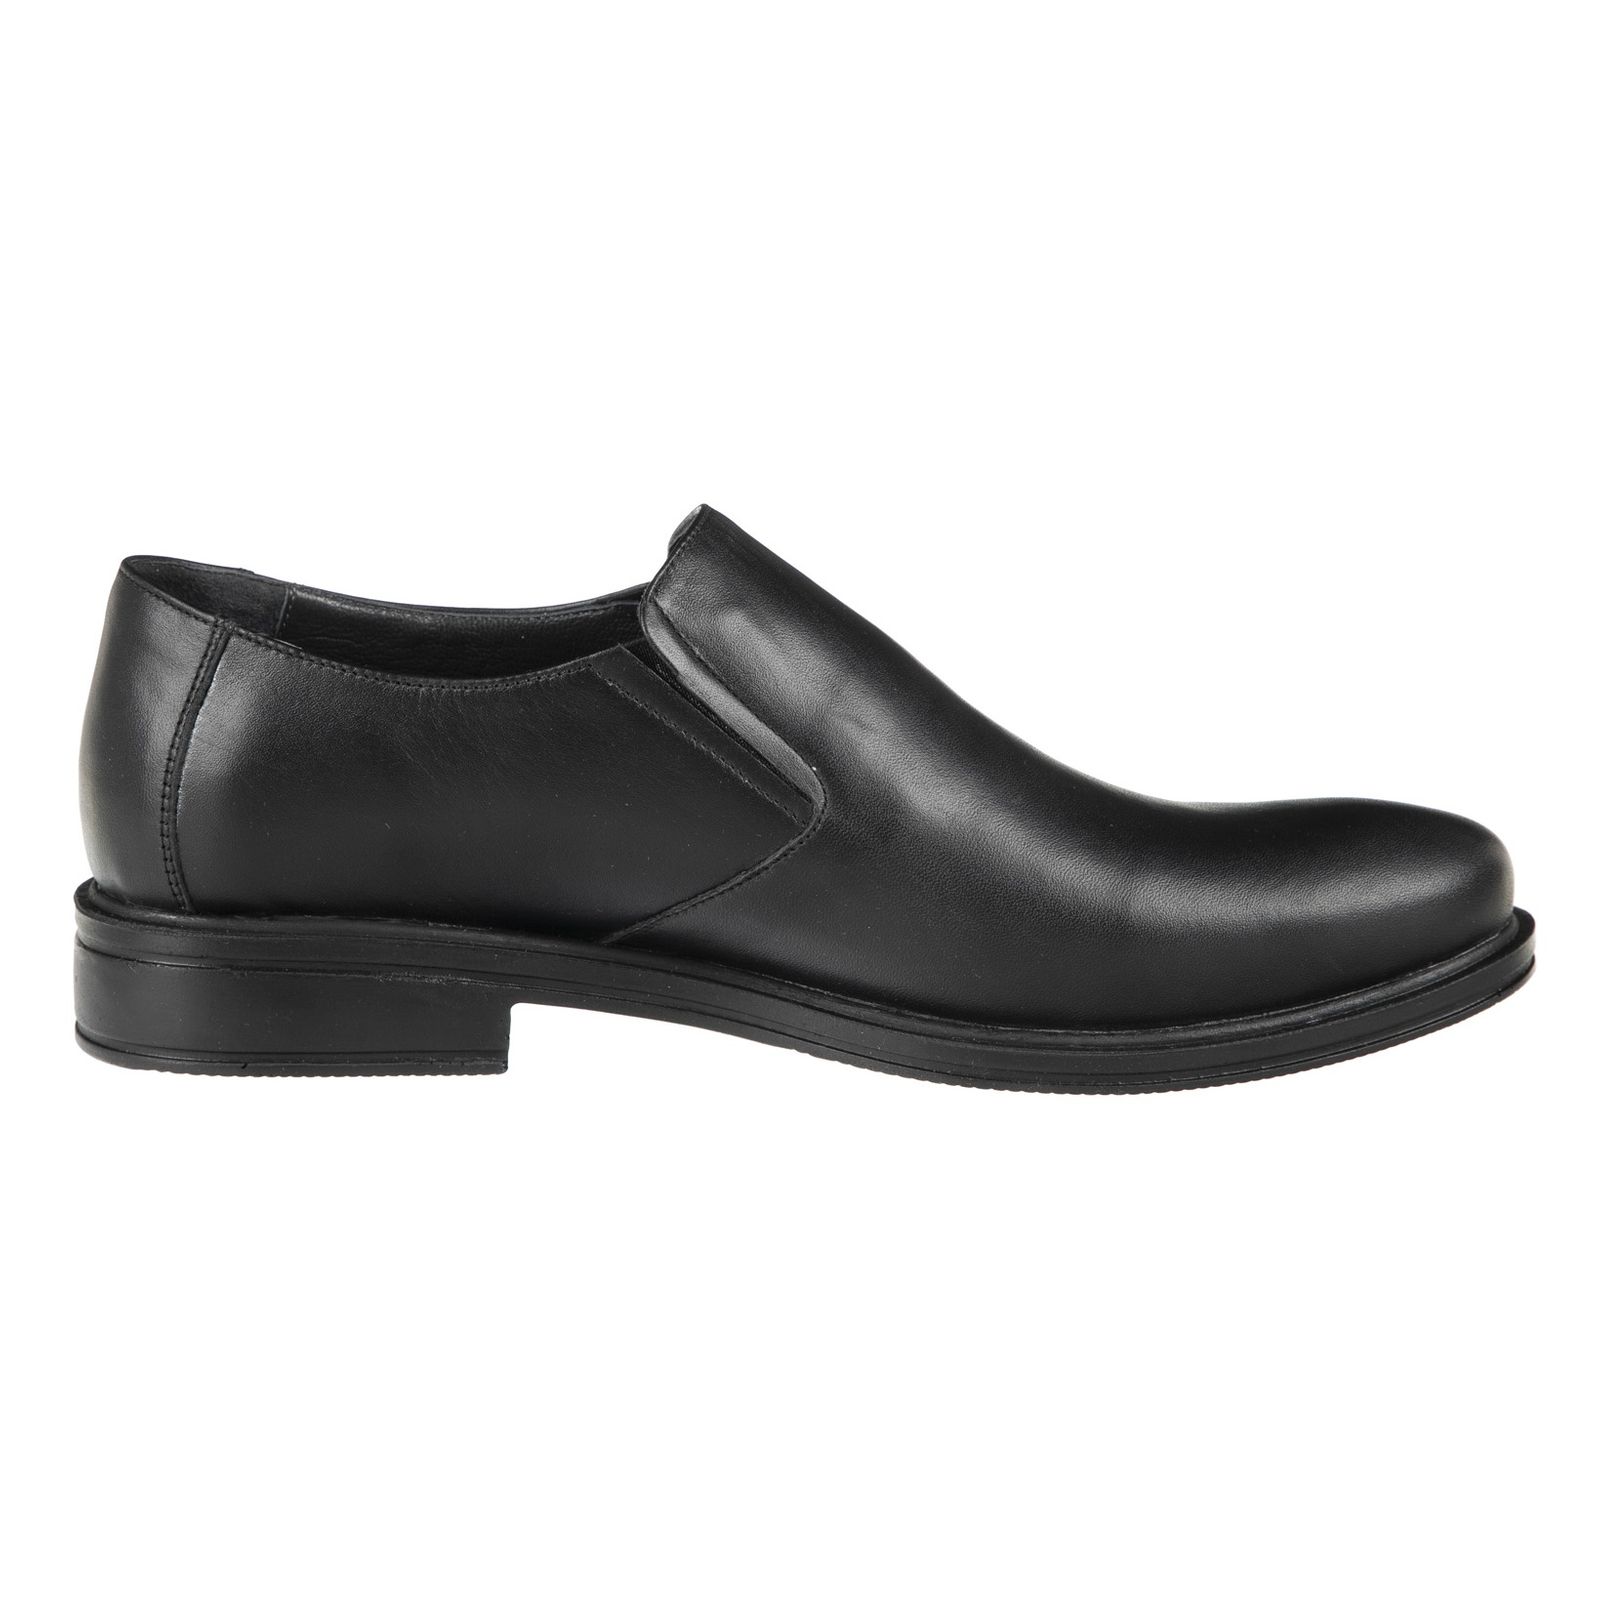 کفش مردانه دلفارد مدل 7161B503-101 - مشکی - 3